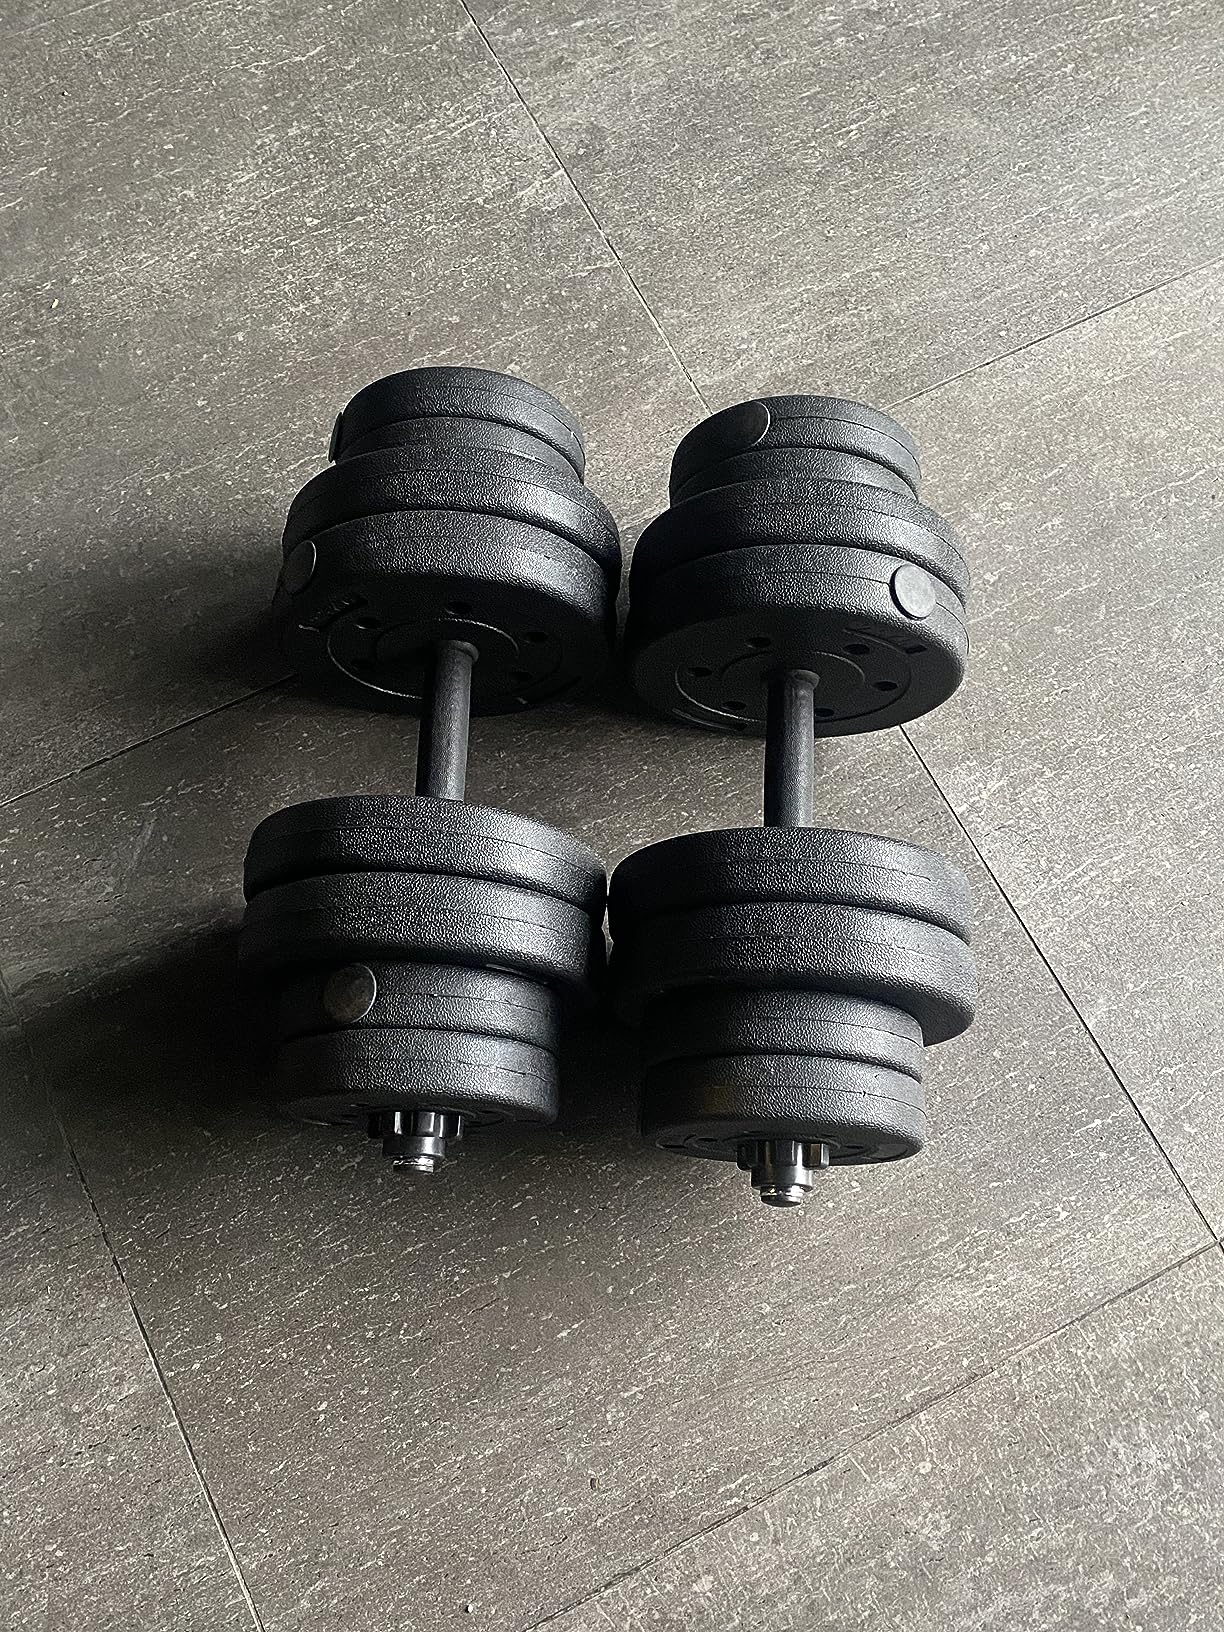 Haltère Giantex Kit Haltères Musculation 2 en 1 avec Disques Poids  Ajustable 30KG Poignée Confortable pour Fitness Musculation Formation